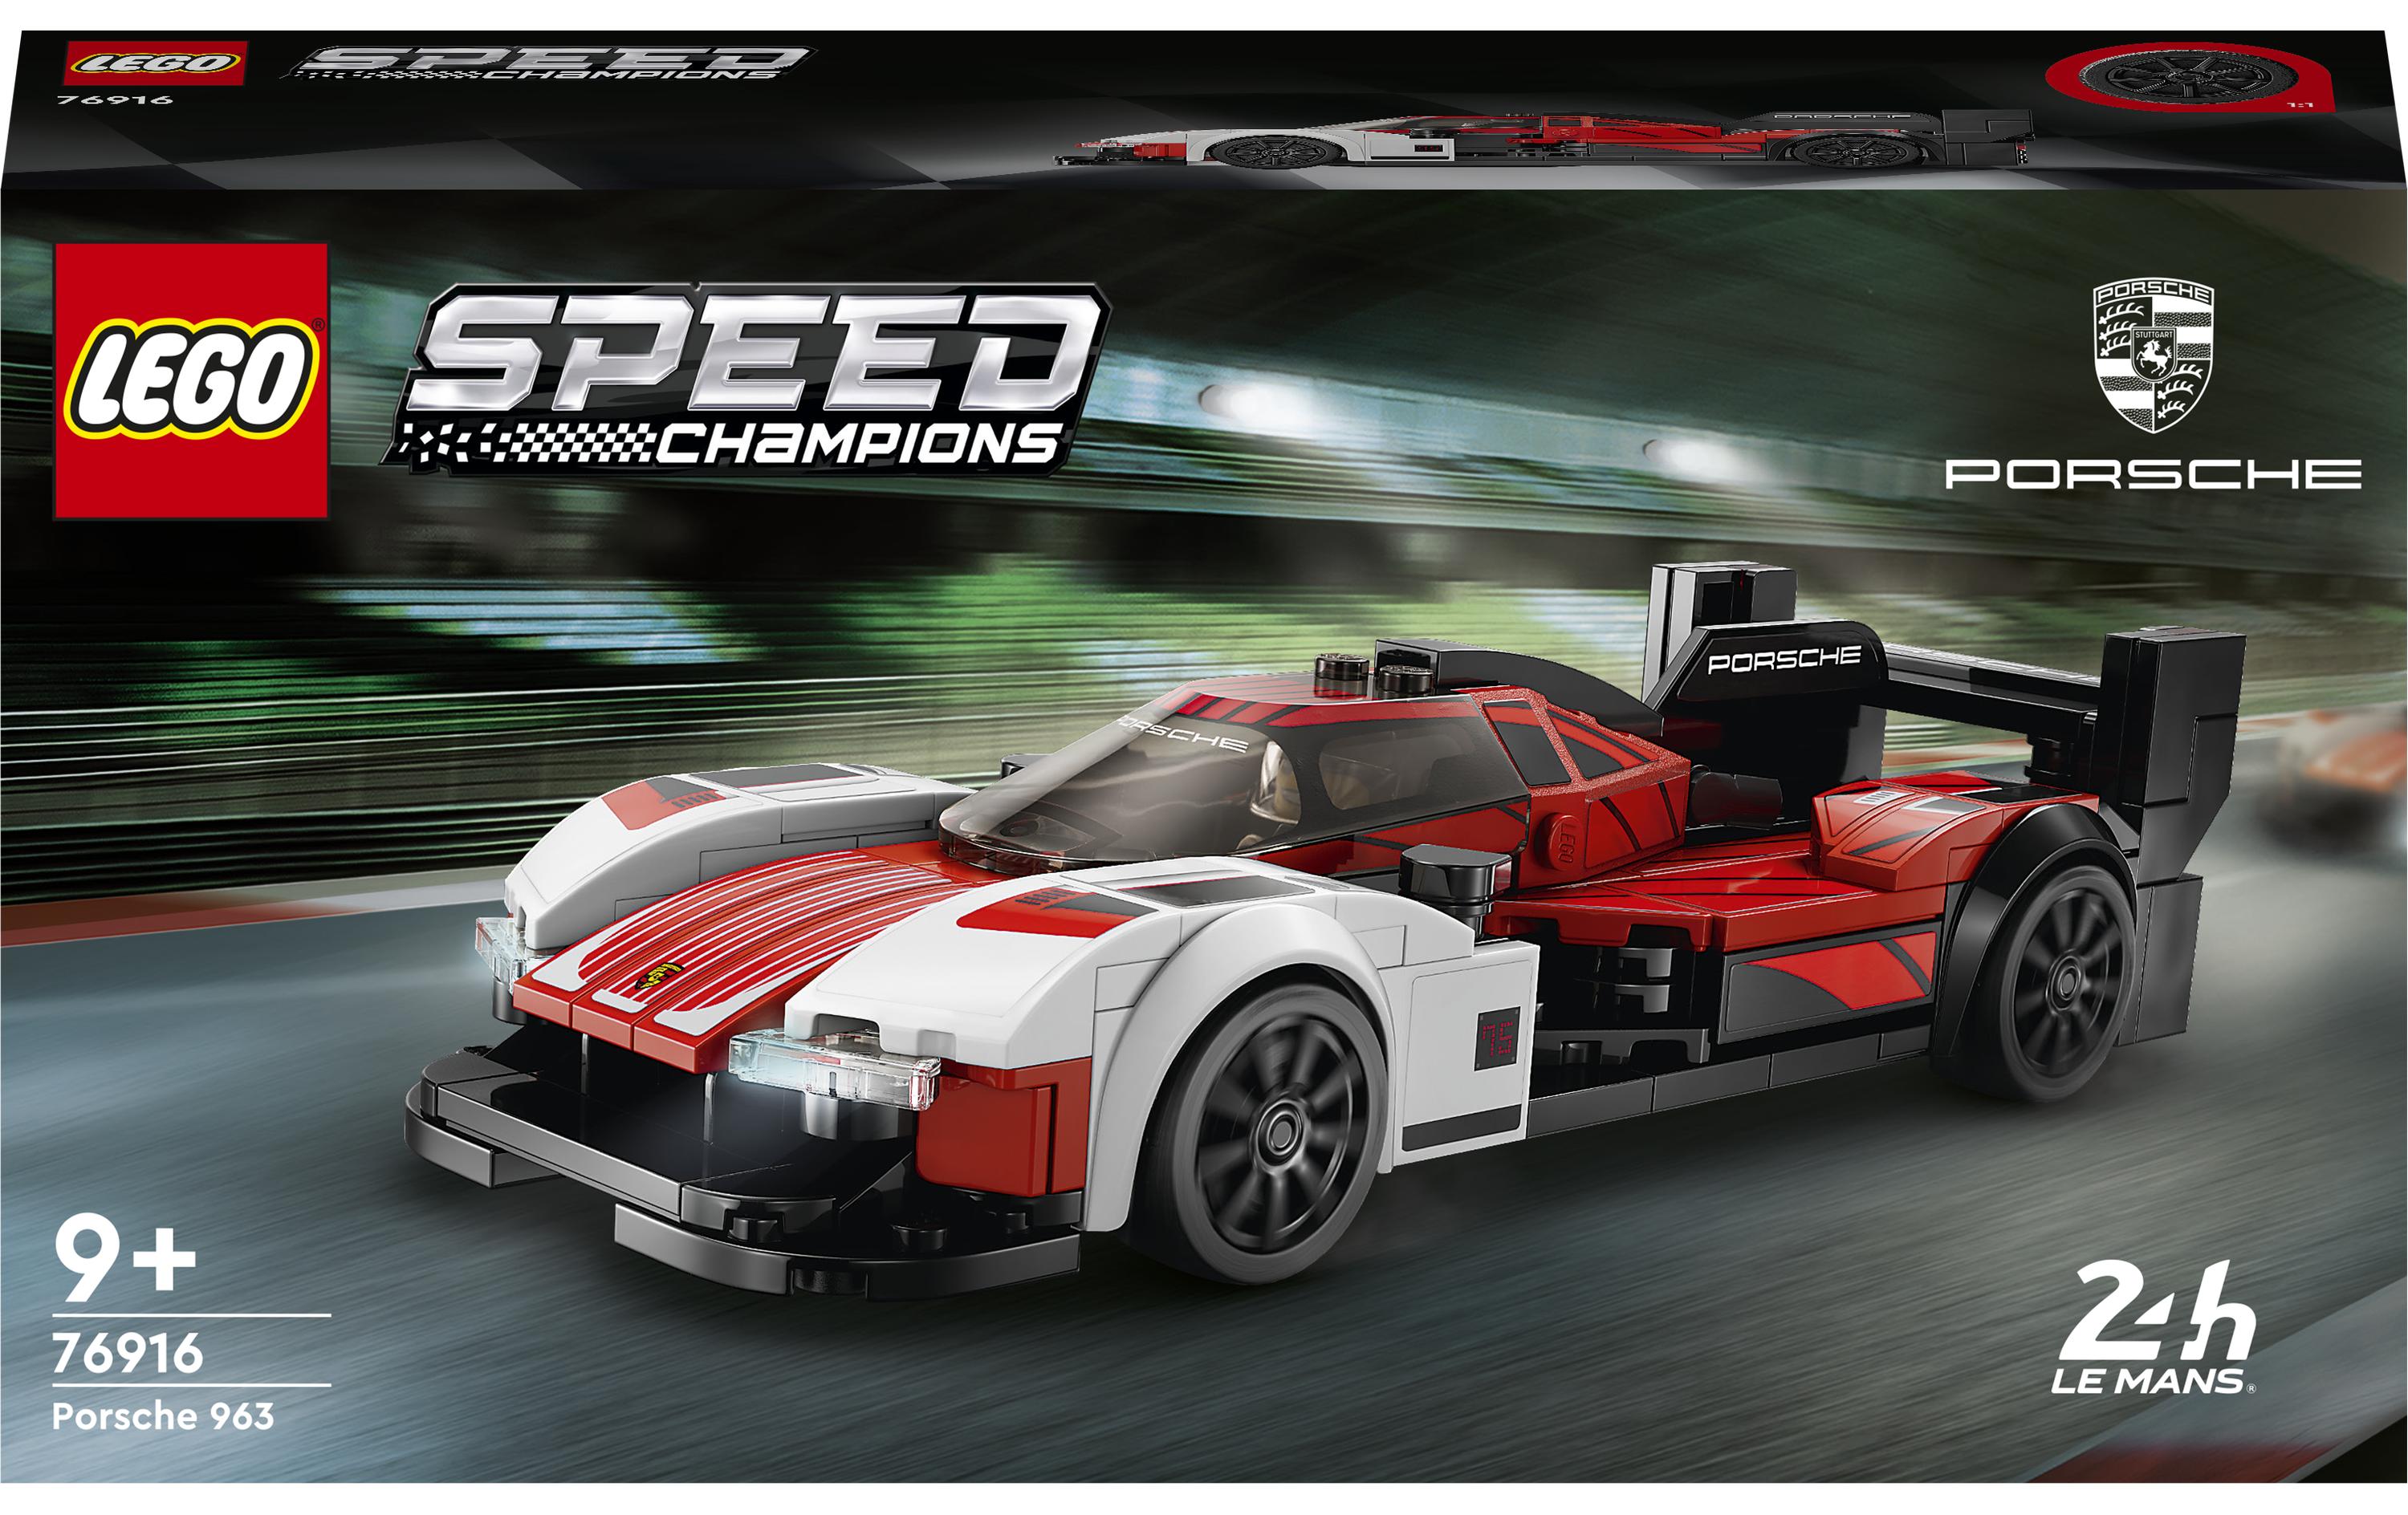 LEGO® Speed Champions Porsche 963 76916 - im GOLDSTIEN.SHOP verfügbar mit Gratisversand ab Schweizer Lager! (5702017424200)